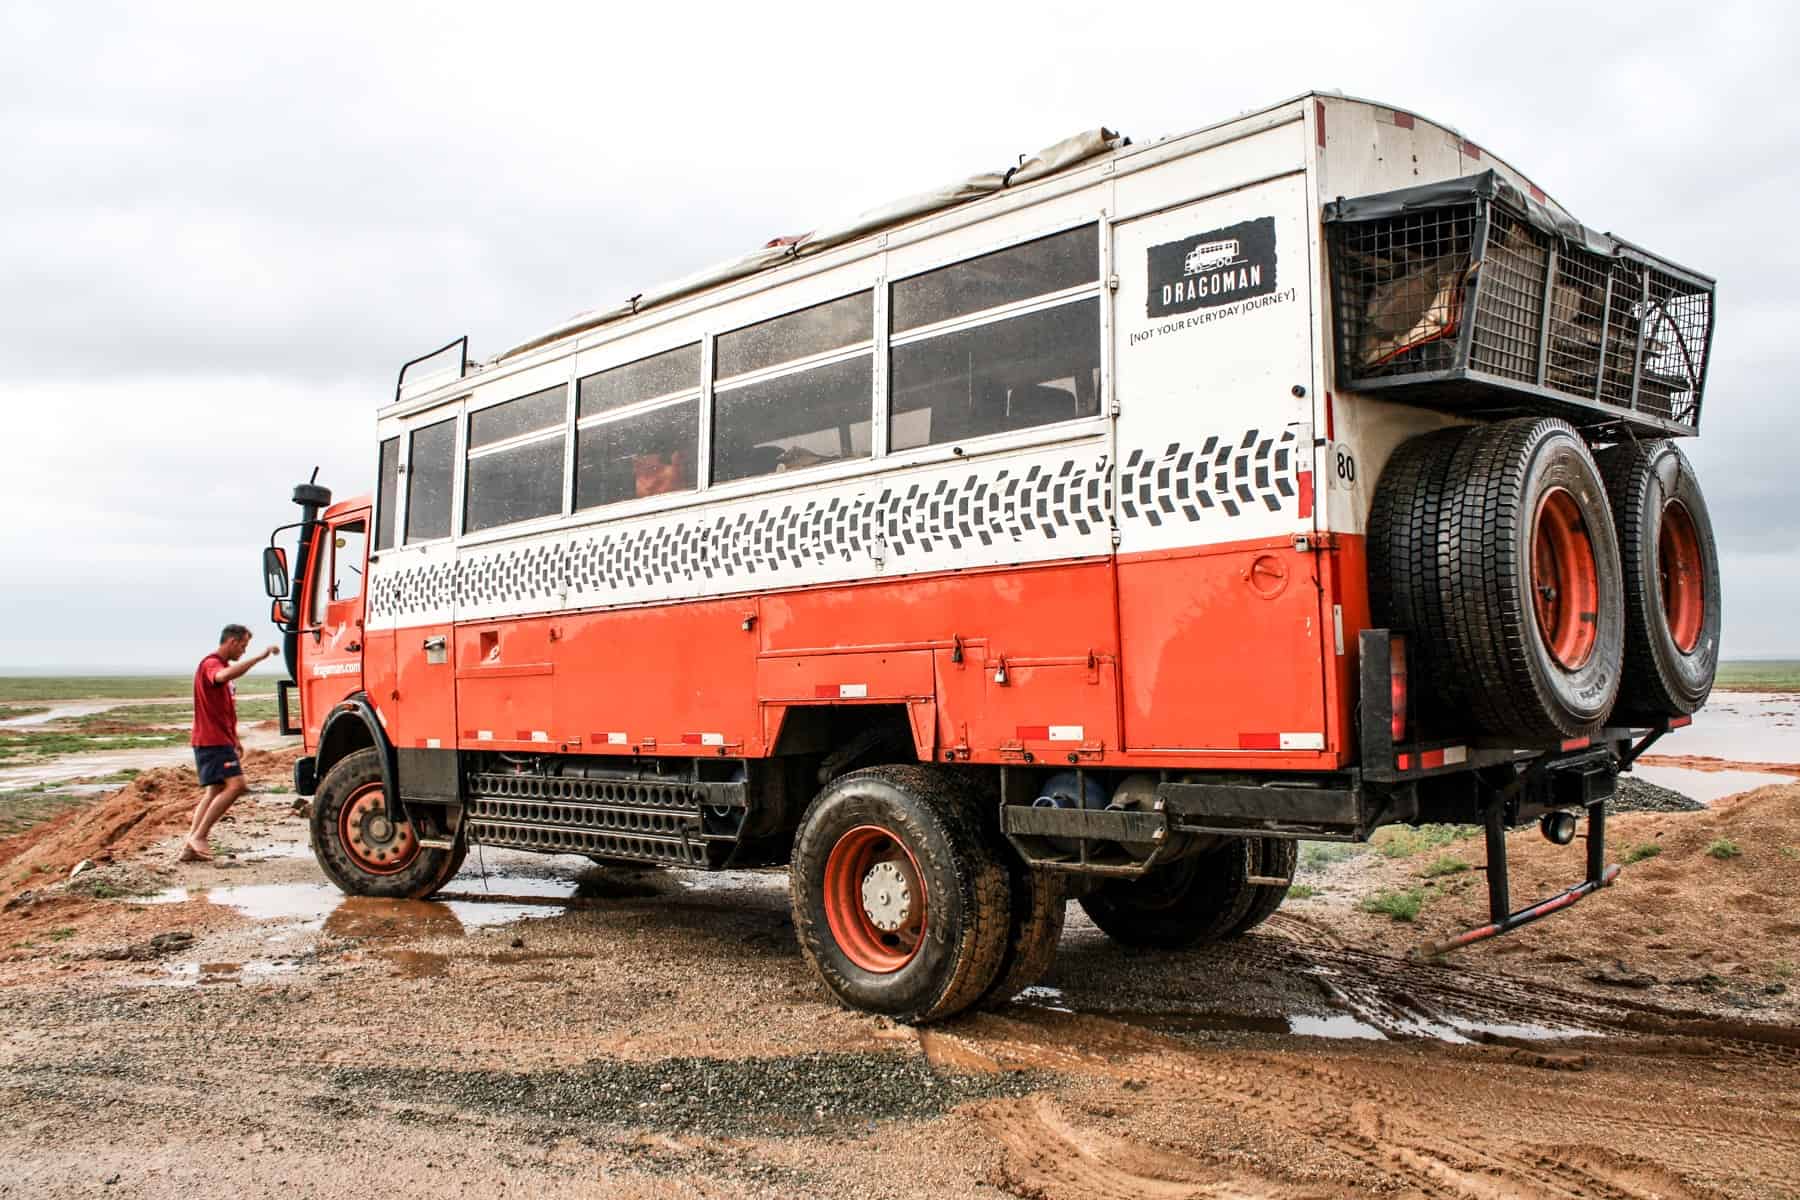 El camión terrestre naranja y blanco solía viajar a Mongolia y su paisaje rural como el fangoso que se muestra